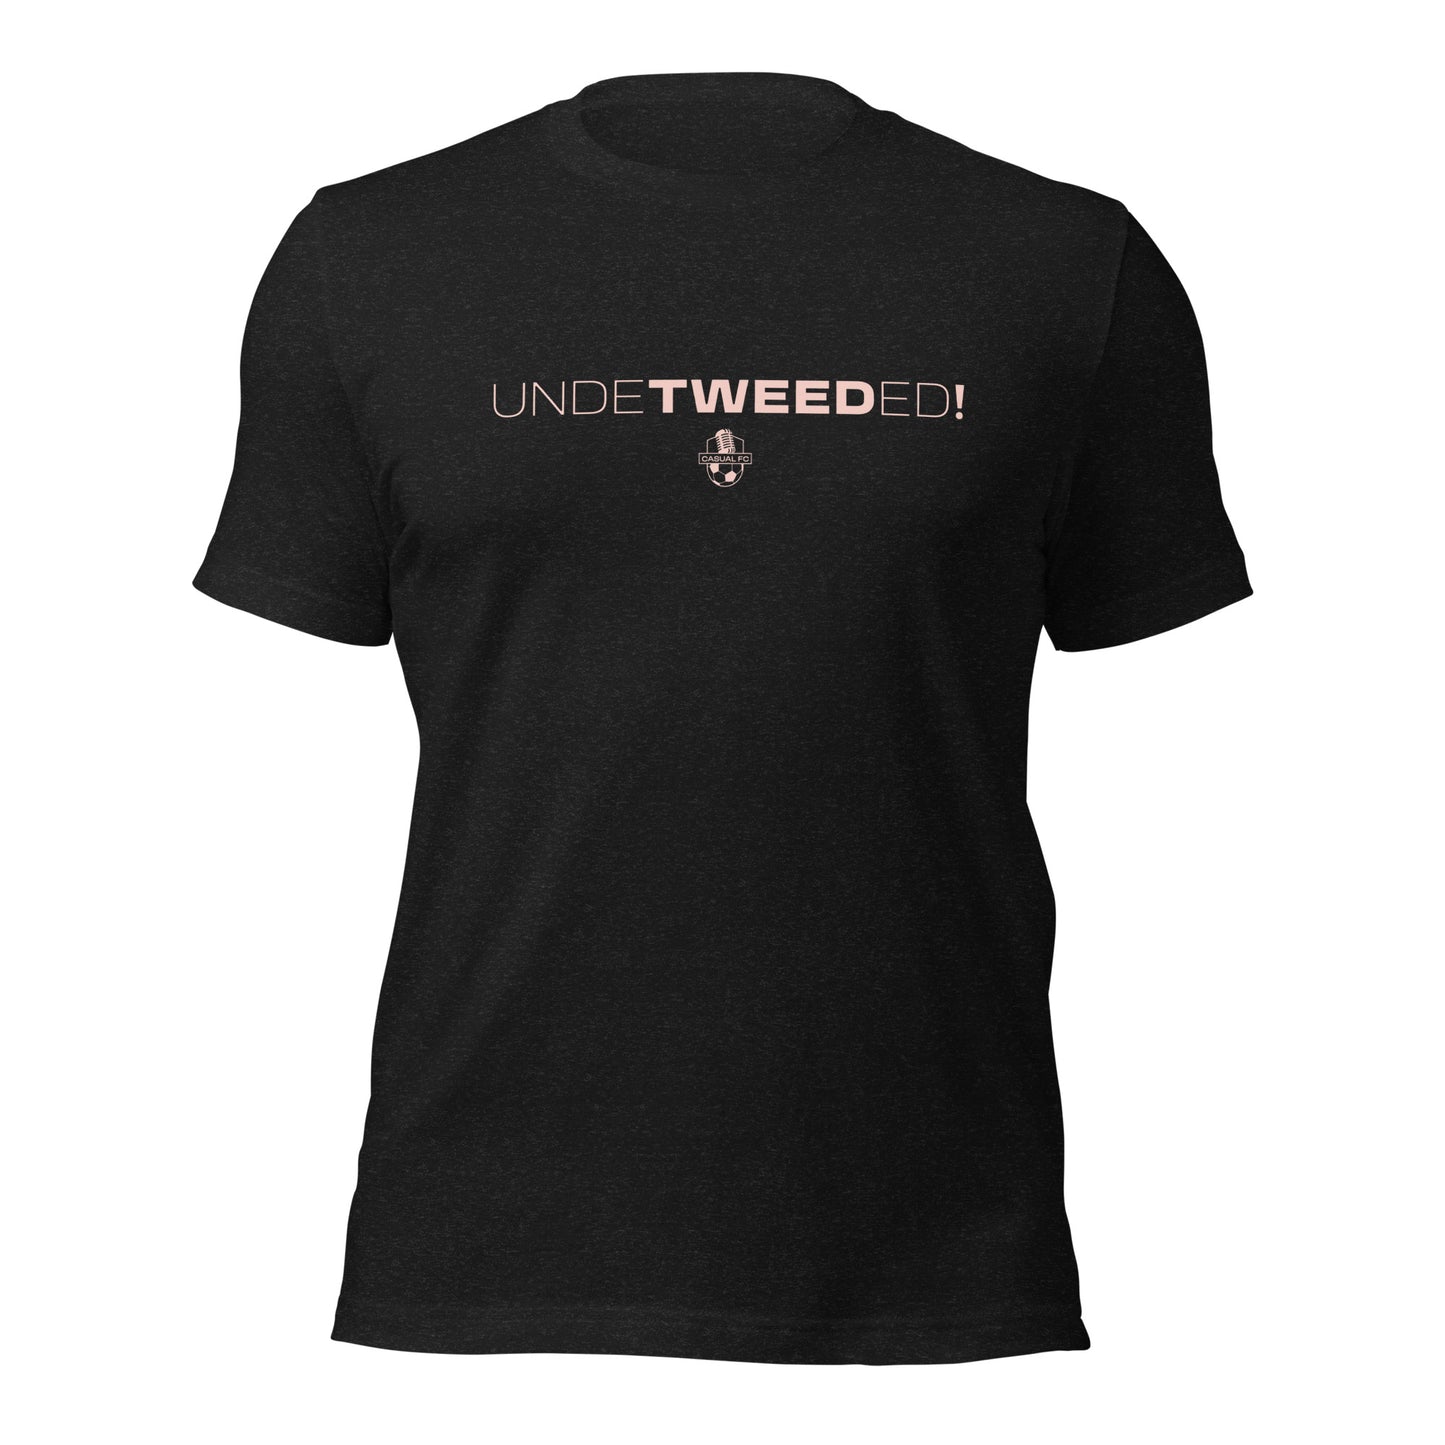 undeTWEEDed! Unisex Shirt